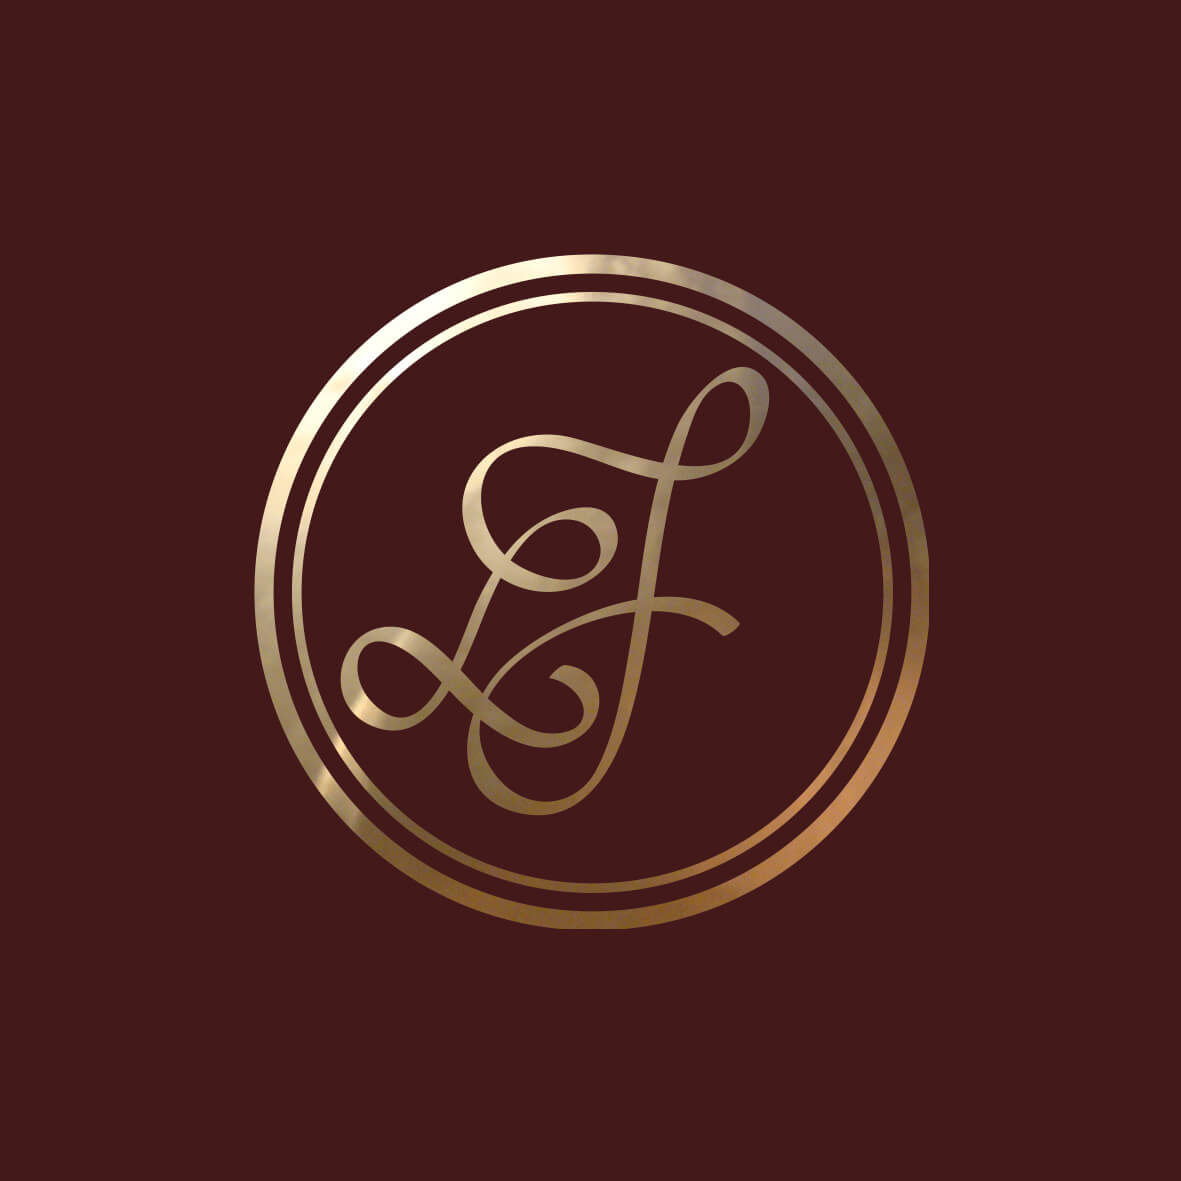 Hochzeitslogo: Logo das Wachssiegel eines Hochzeitspaares